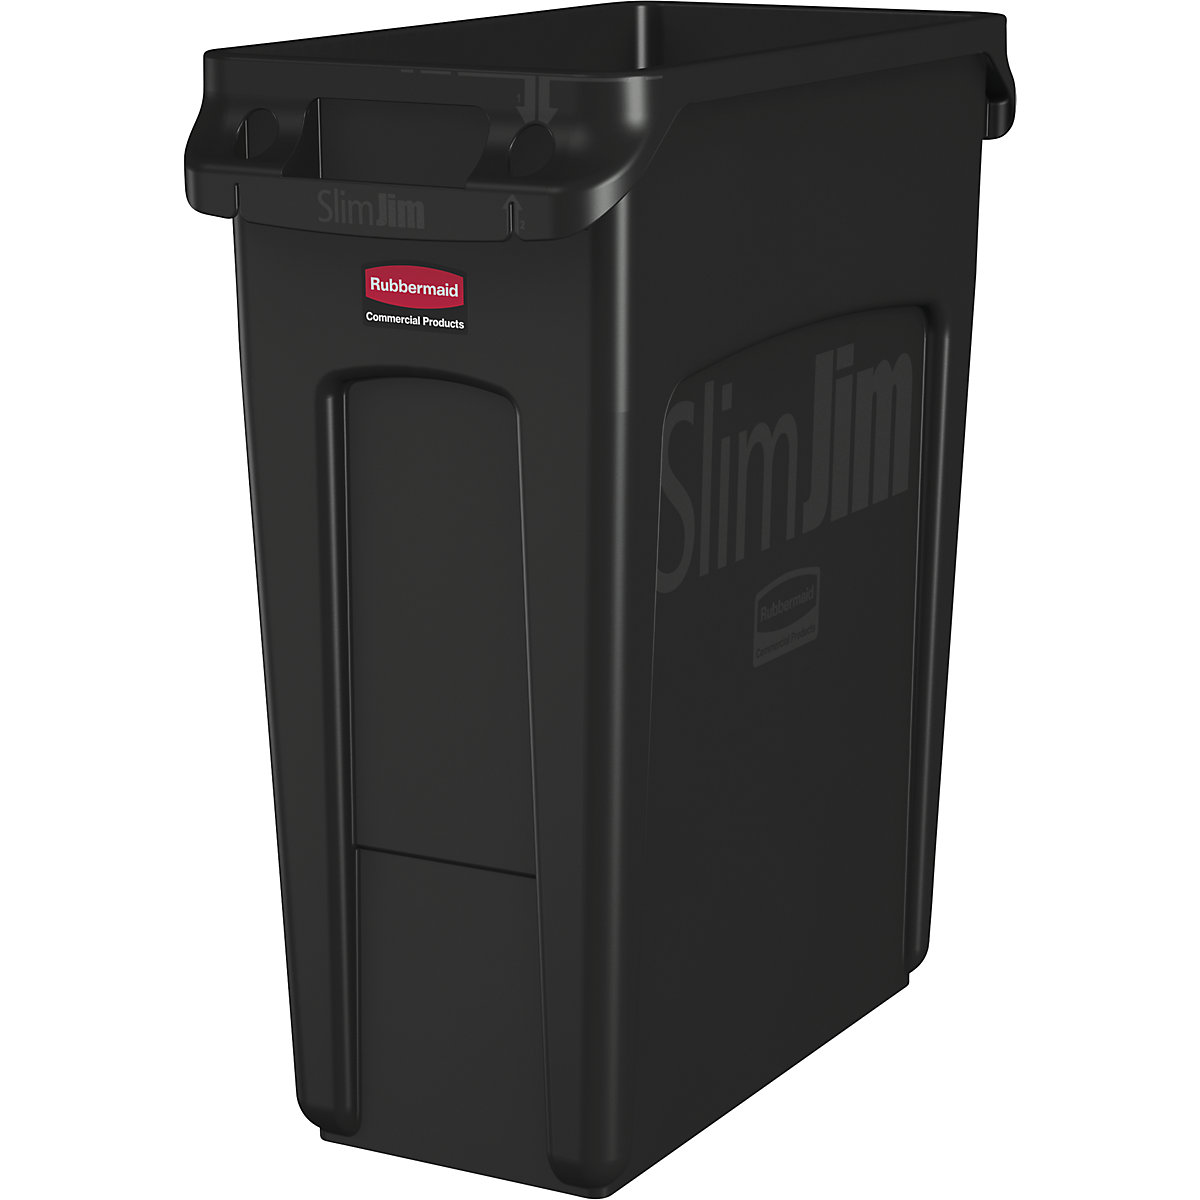 Verzamelaar voor kringloopmateriaal/afvalbak SLIM JIM® – Rubbermaid